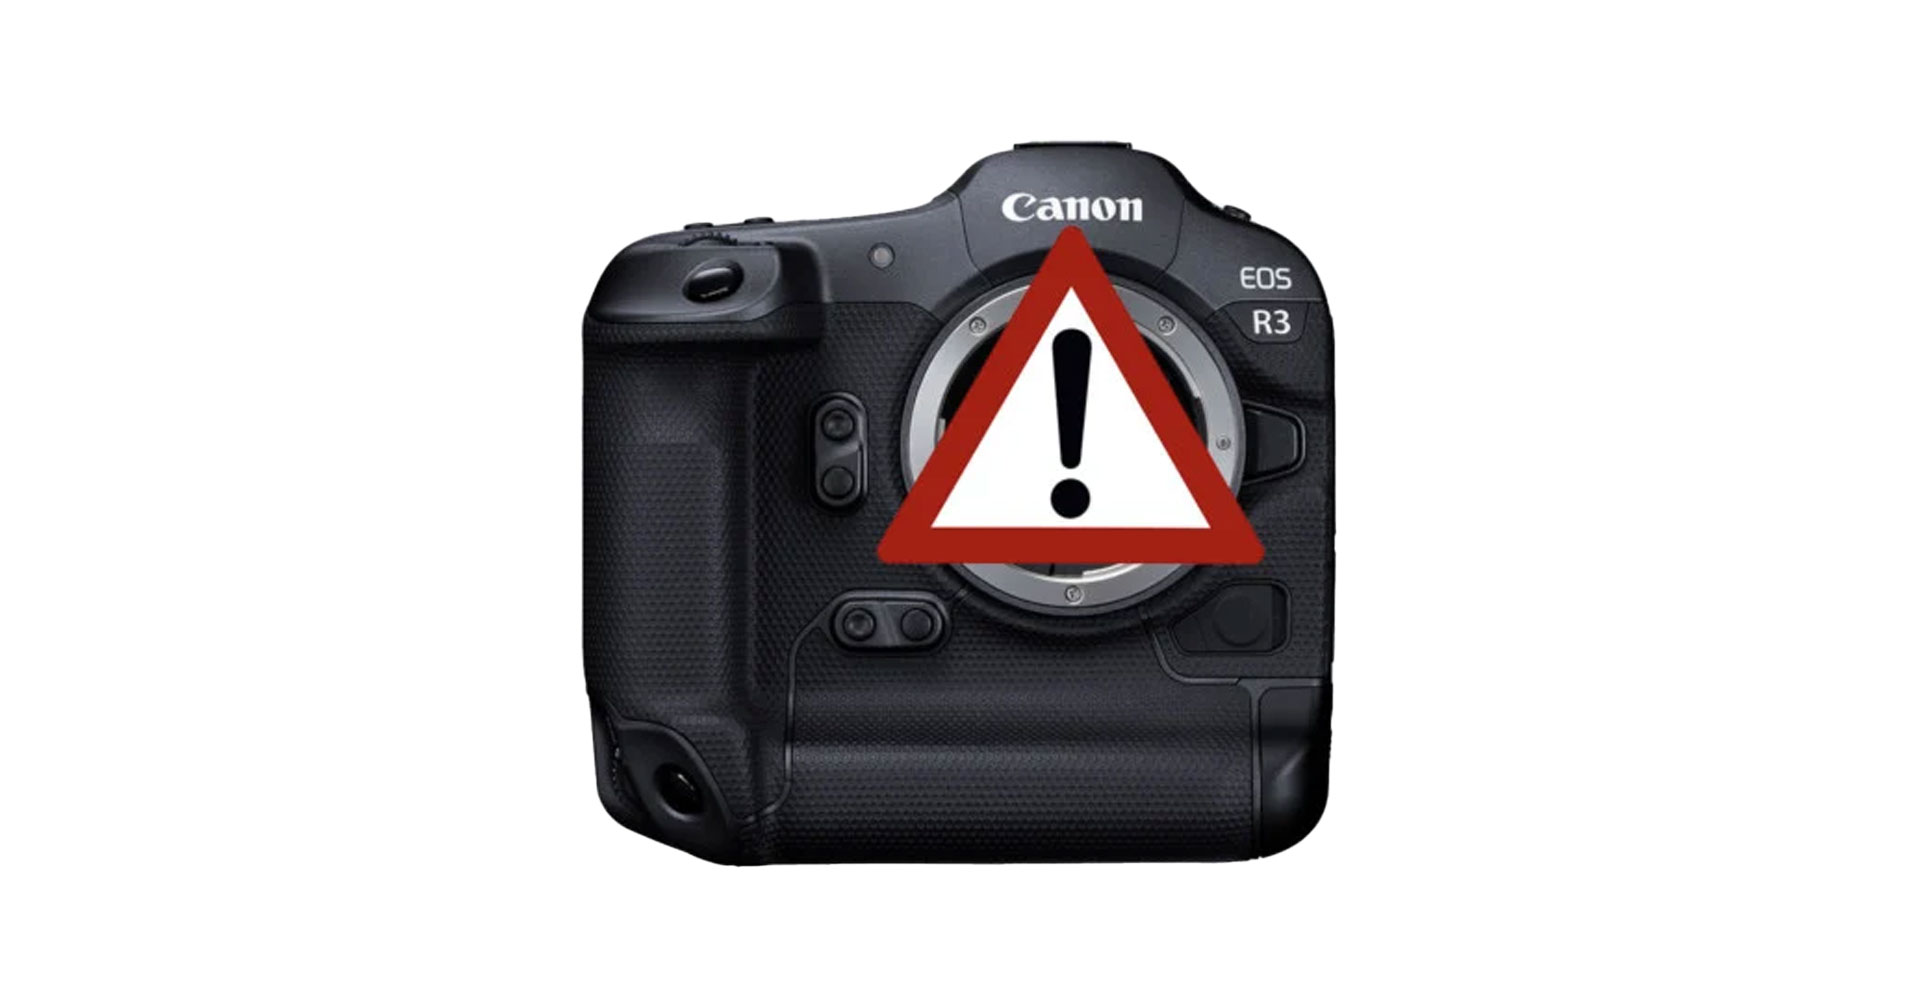 ยังไงกัน!? Canon ถอดเฟิร์มแวร์ใหม่กล้อง EOS R3 ออกจากหน้าเว็บไซต์